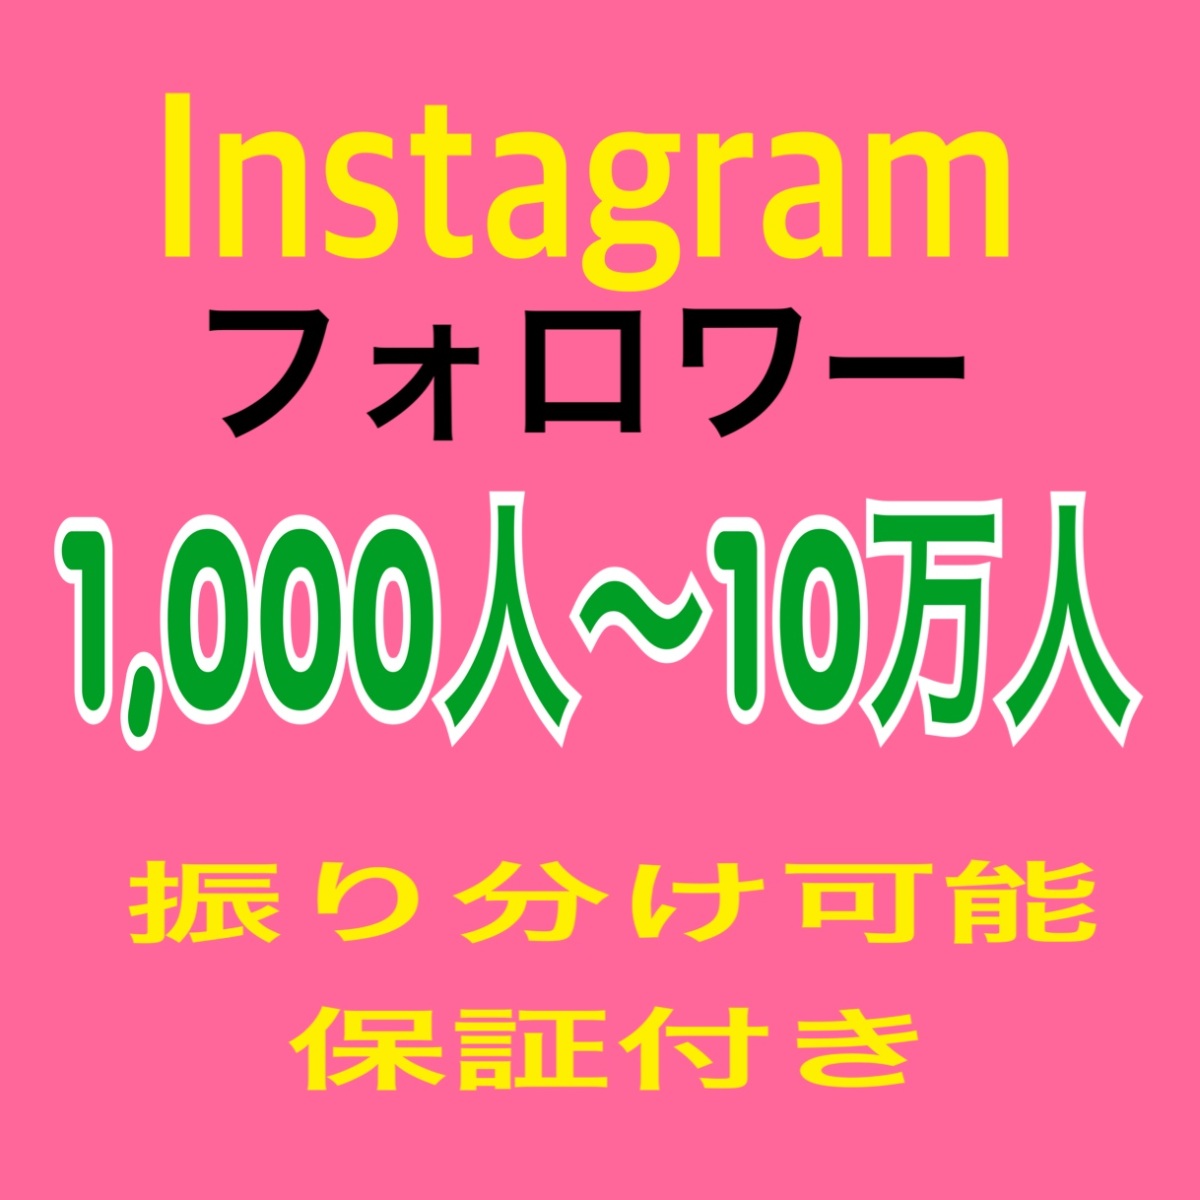 เพิ่มผู้ติดตาม Instagram +1,000 คน